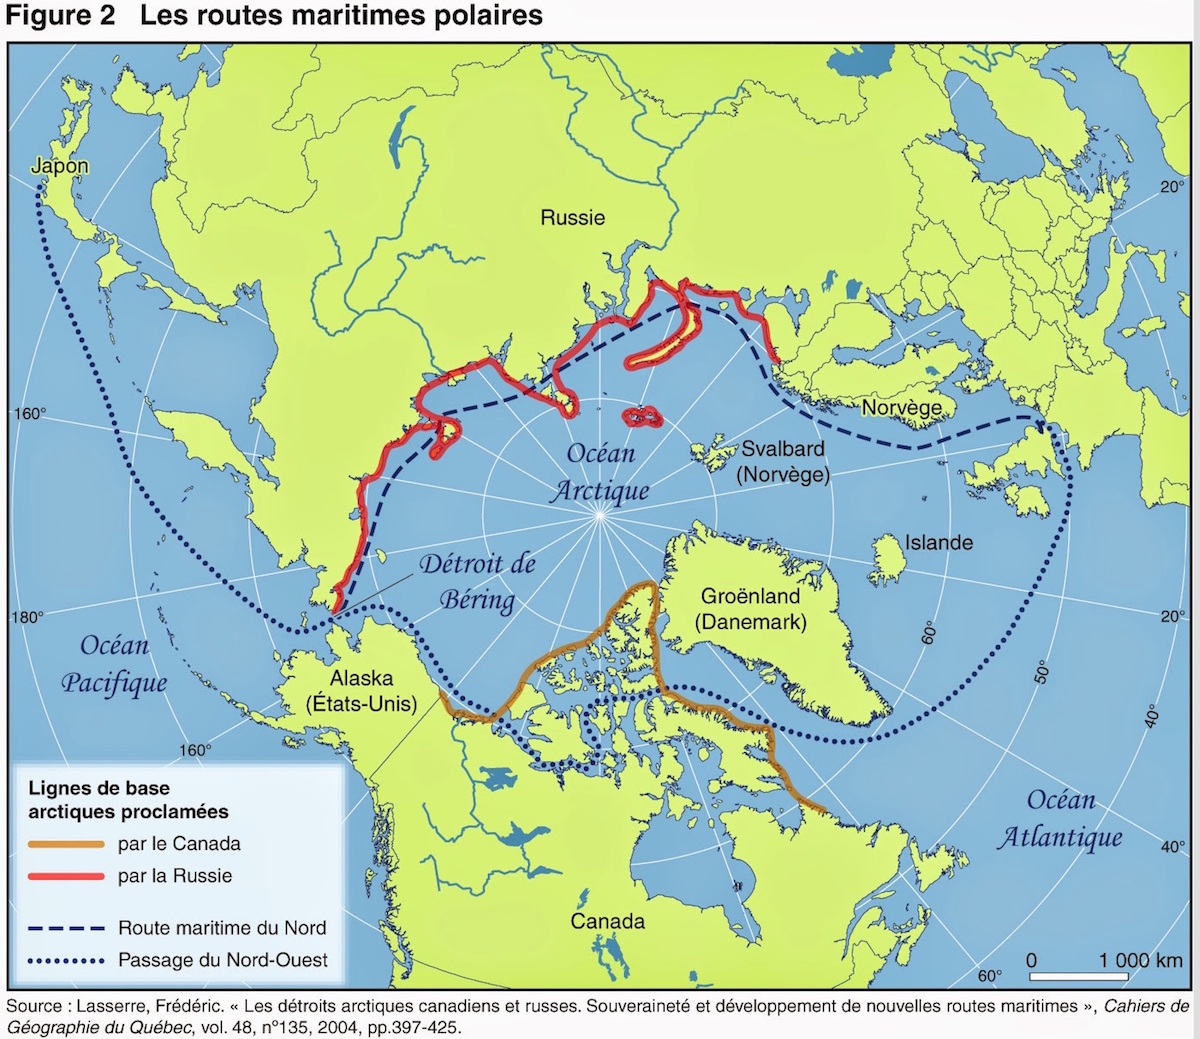 Arctic - Polar sea routes • Map • PopulationData.net